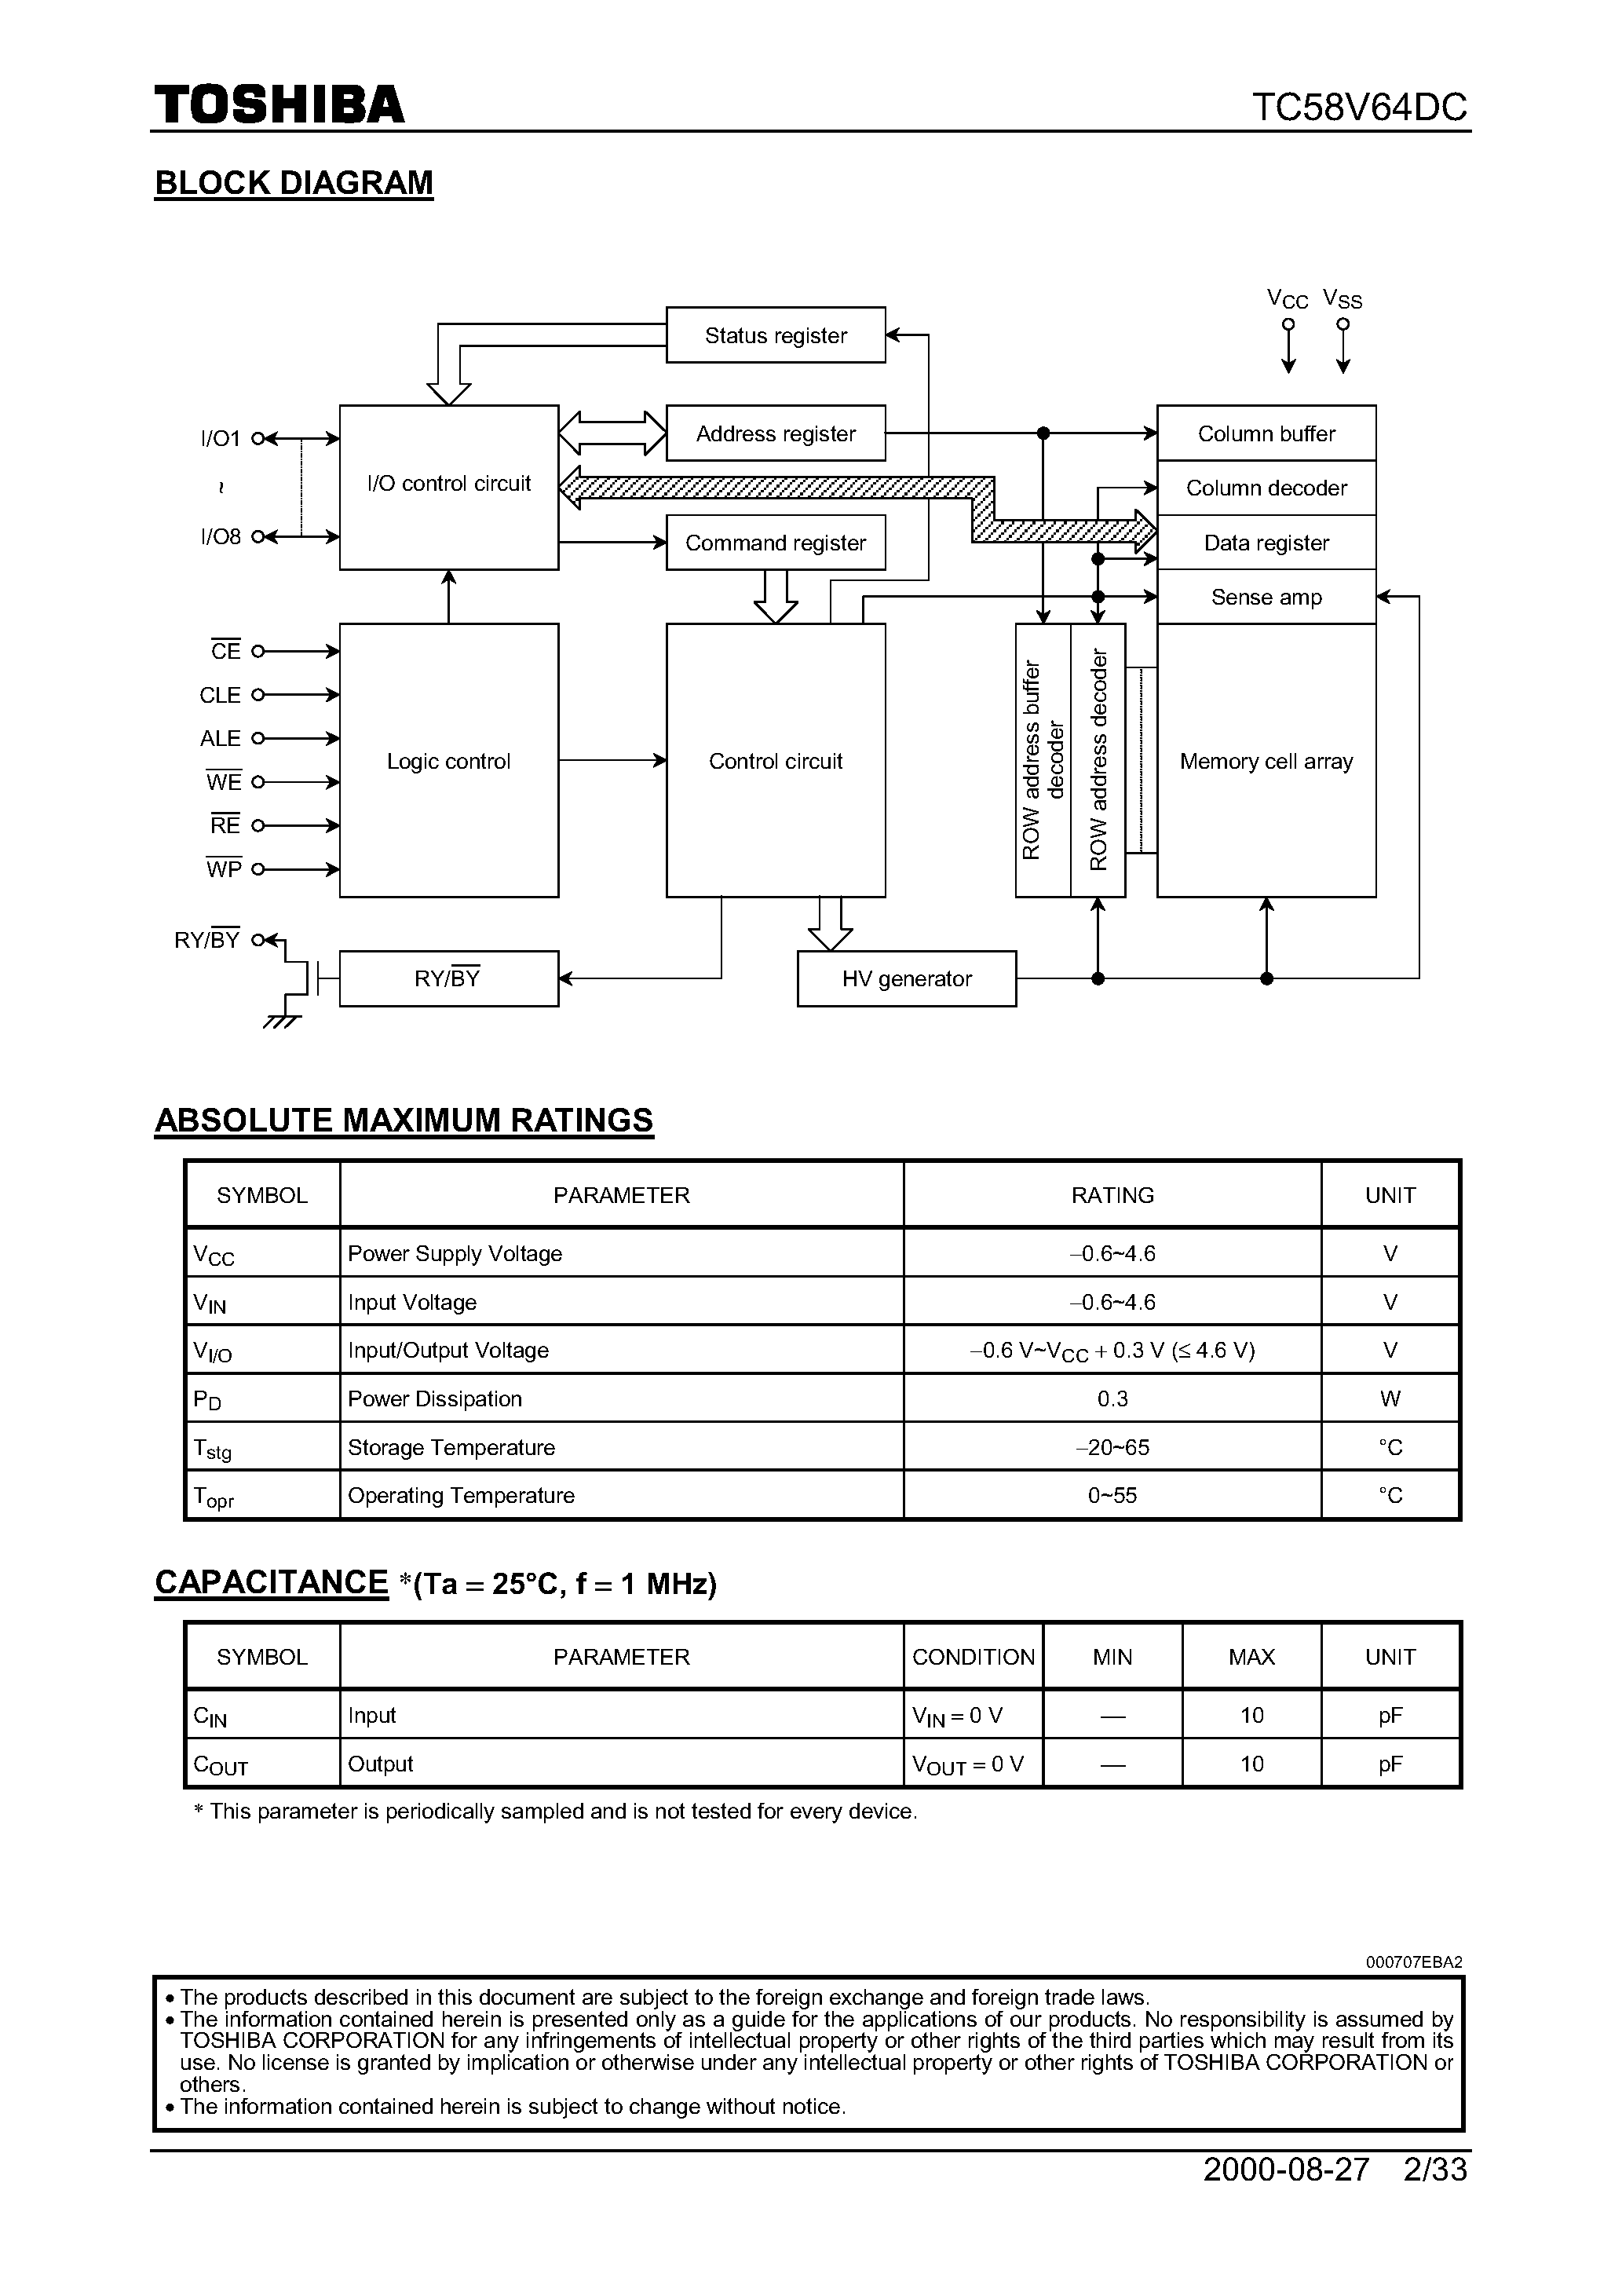 Даташит TC58V64DC - 16M-Bit CMOS NAND EPROM страница 2